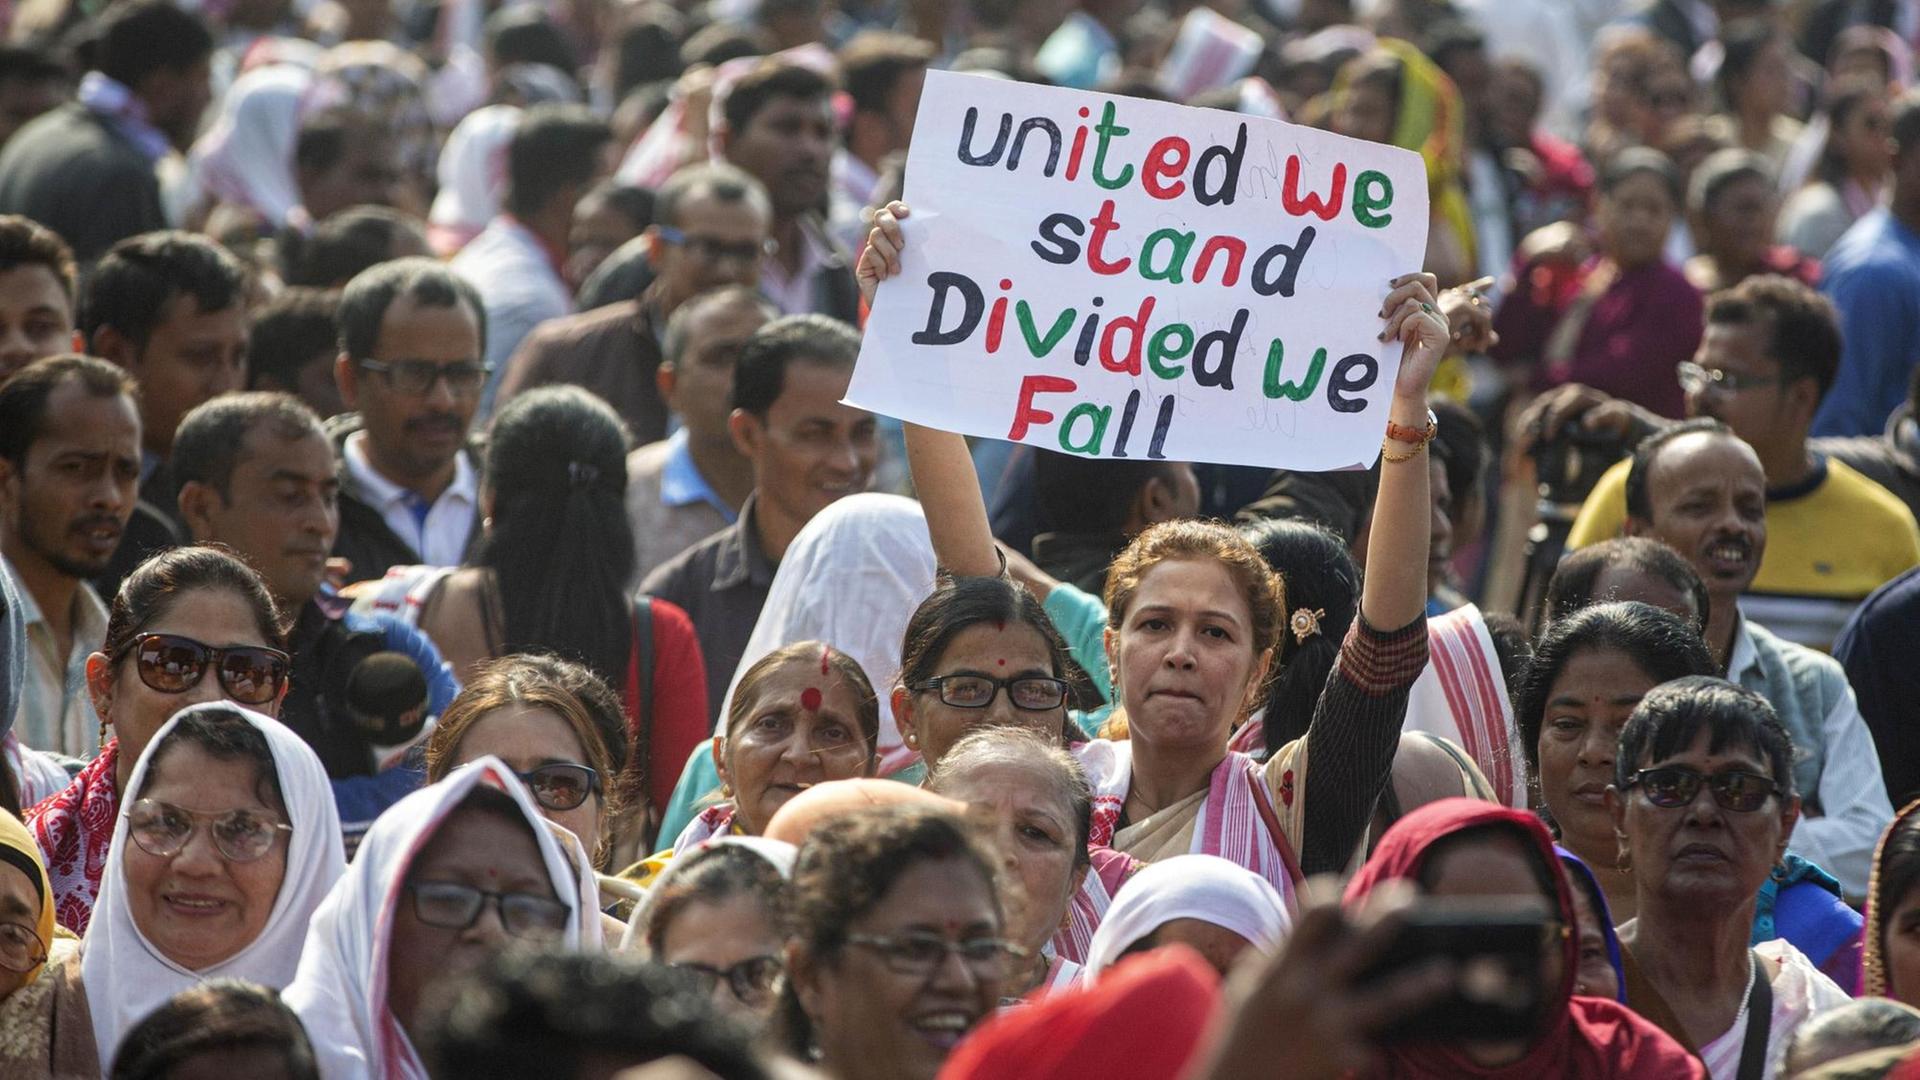 Die Menschenmenge füllt das ganze Bild aus. In der Mite eine Frau, die ein Schild mit der Aufschrift "united we stand, divided we fall" hochhält.